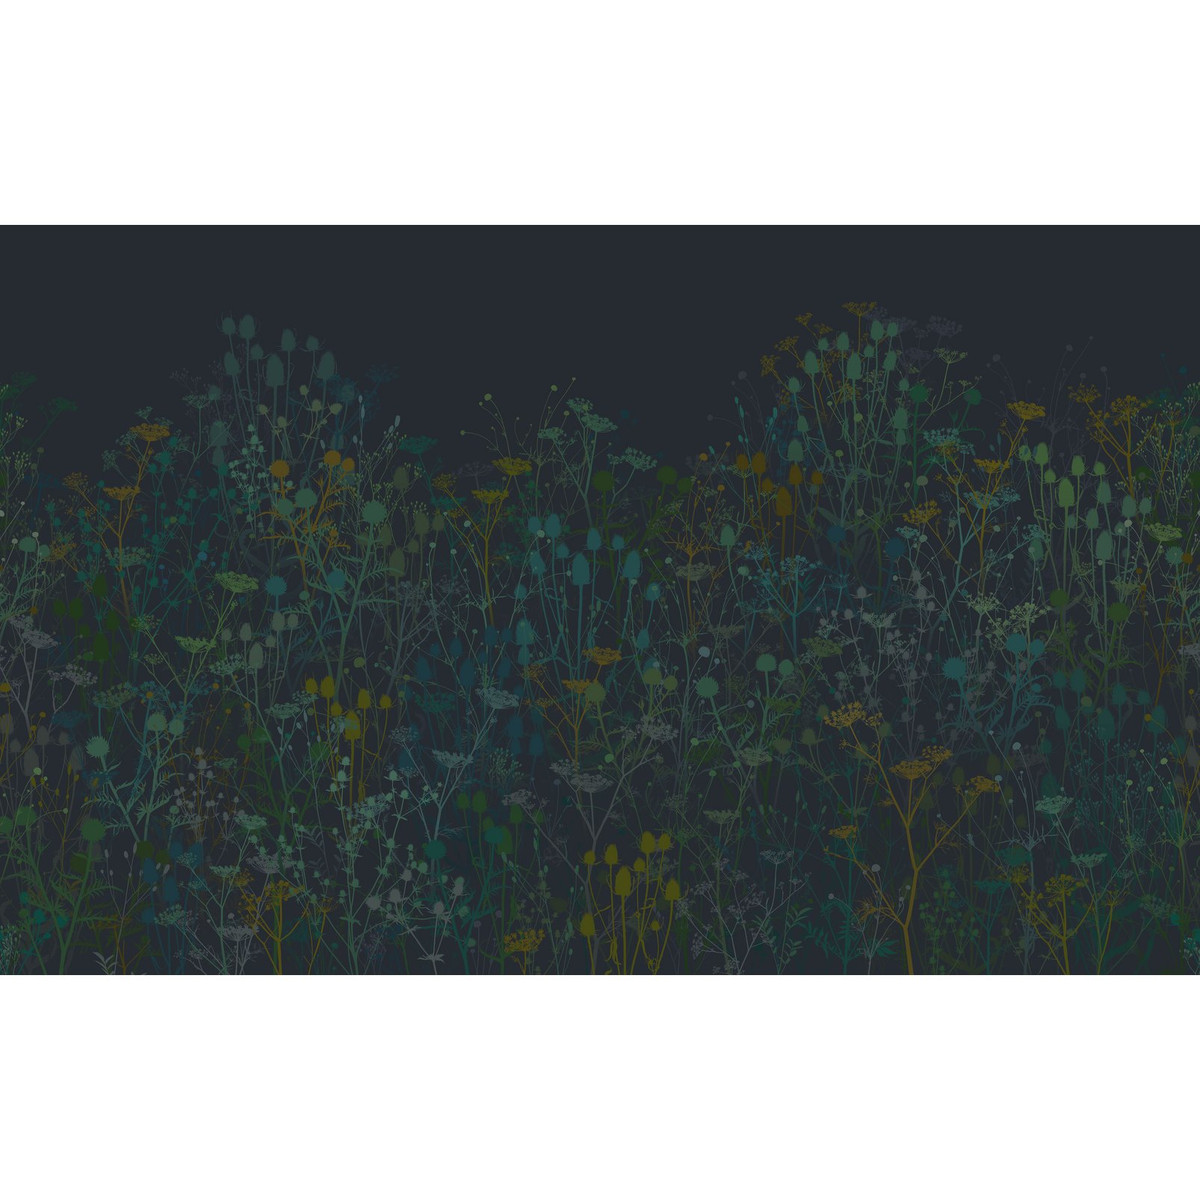 Tania's Garden Midnight Bespoke Mural - 123657_TILE_TANIA'S GARDEN MIDNIGHT.jpg